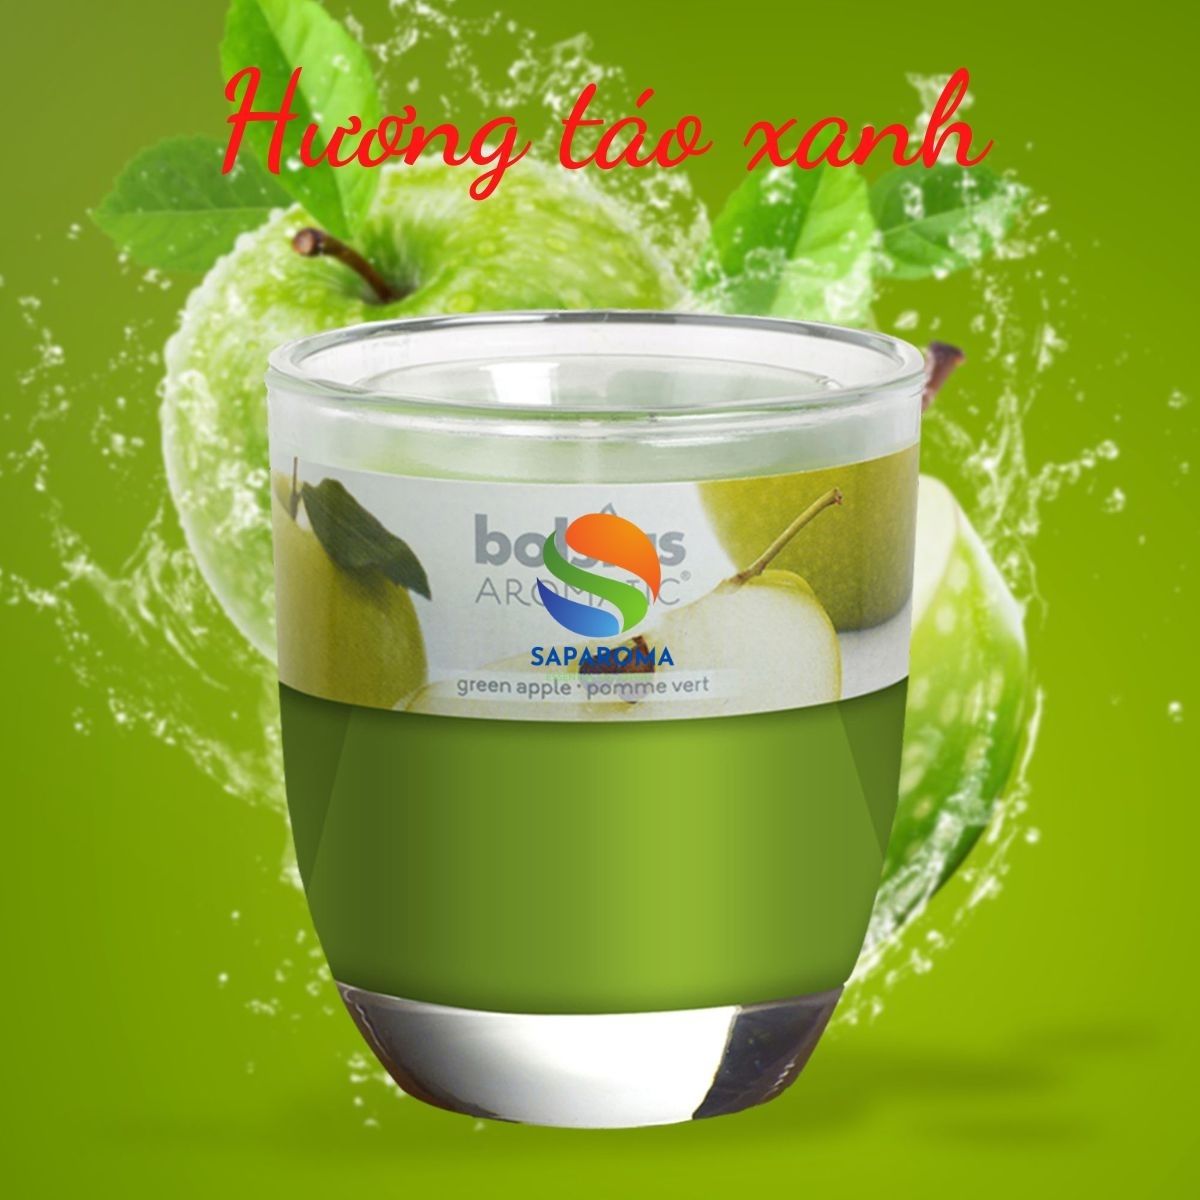 Ly nến thơm tinh dầu Bolsius Green Apple 105g QT024344 - hương táo xanh, nến trang trí, thơm phòng, thư giãn, Hỗ trợ khử mùi